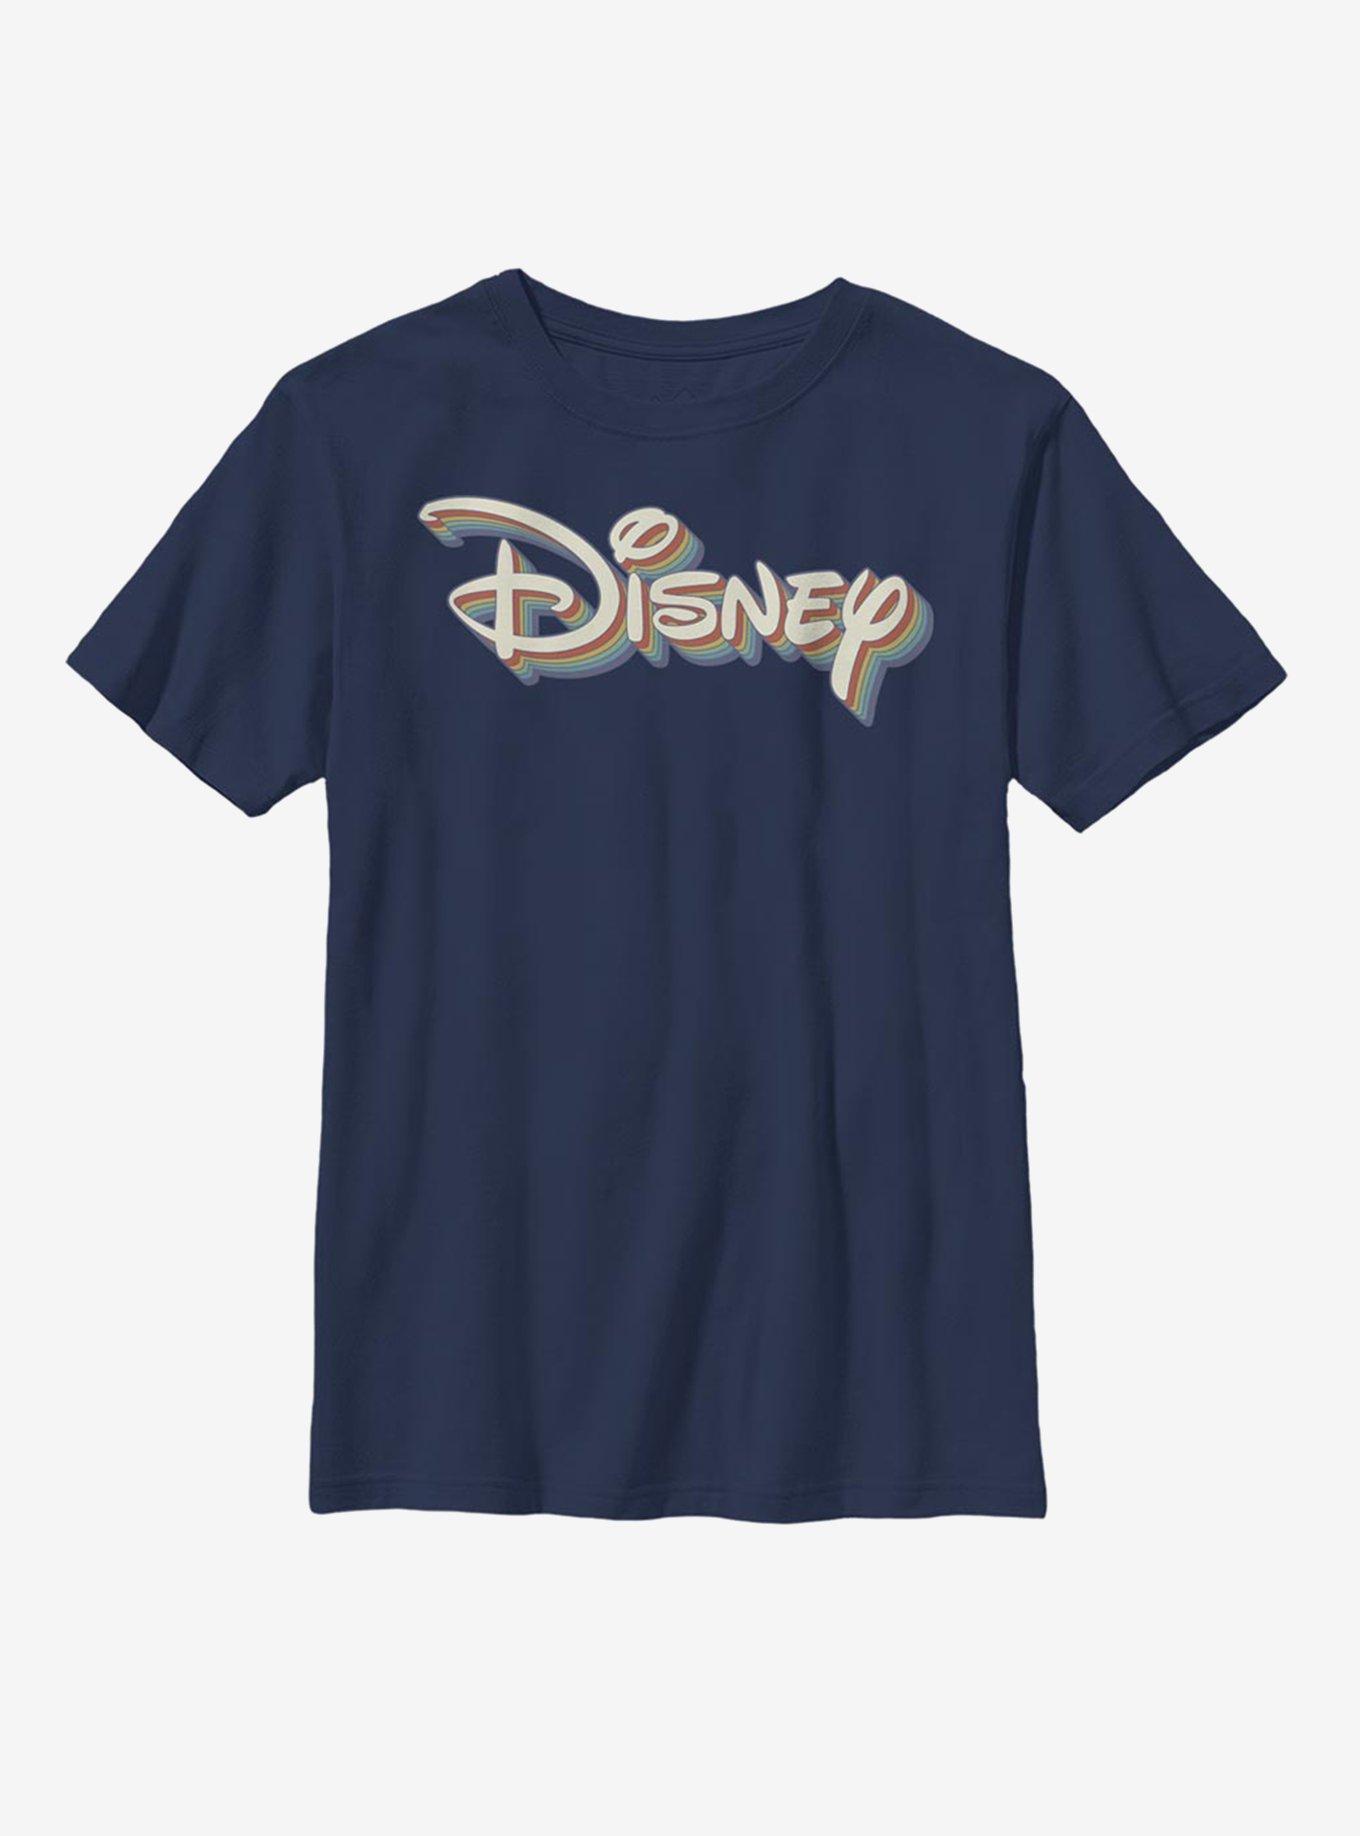 Disney Retro Rainbow Logo Youth T-Shirt, NAVY, hi-res